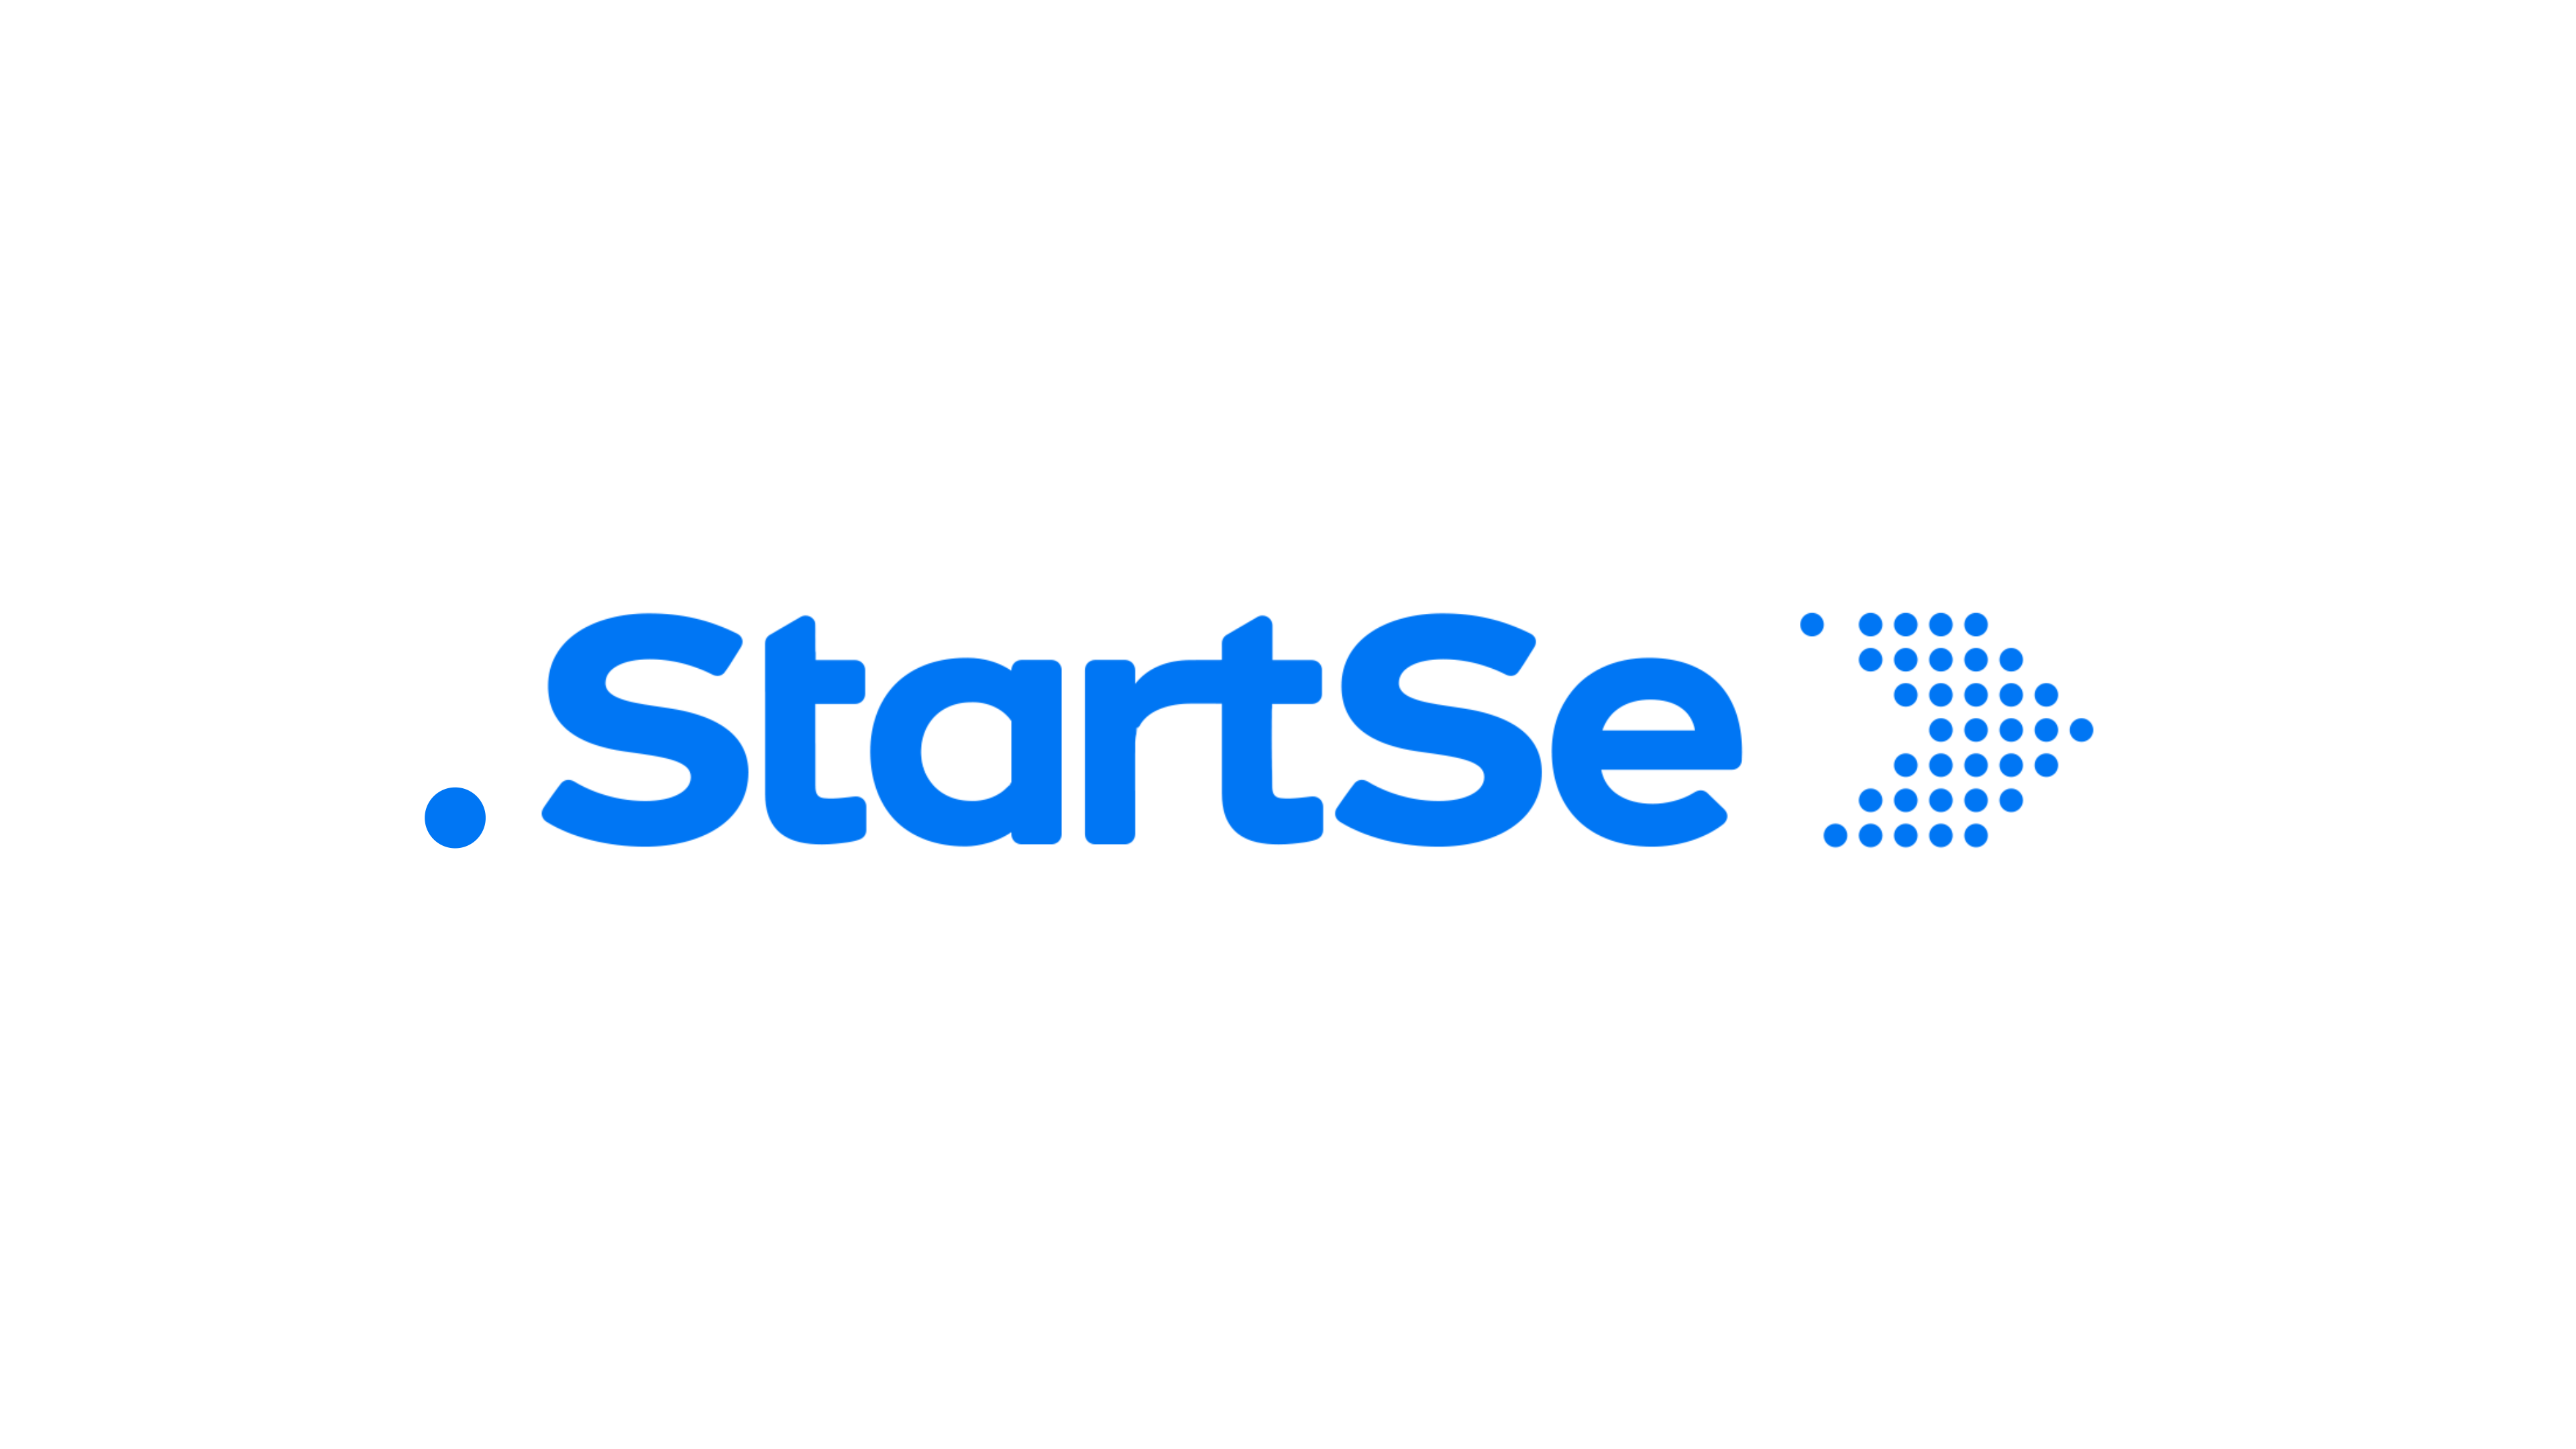 Logo StartSe